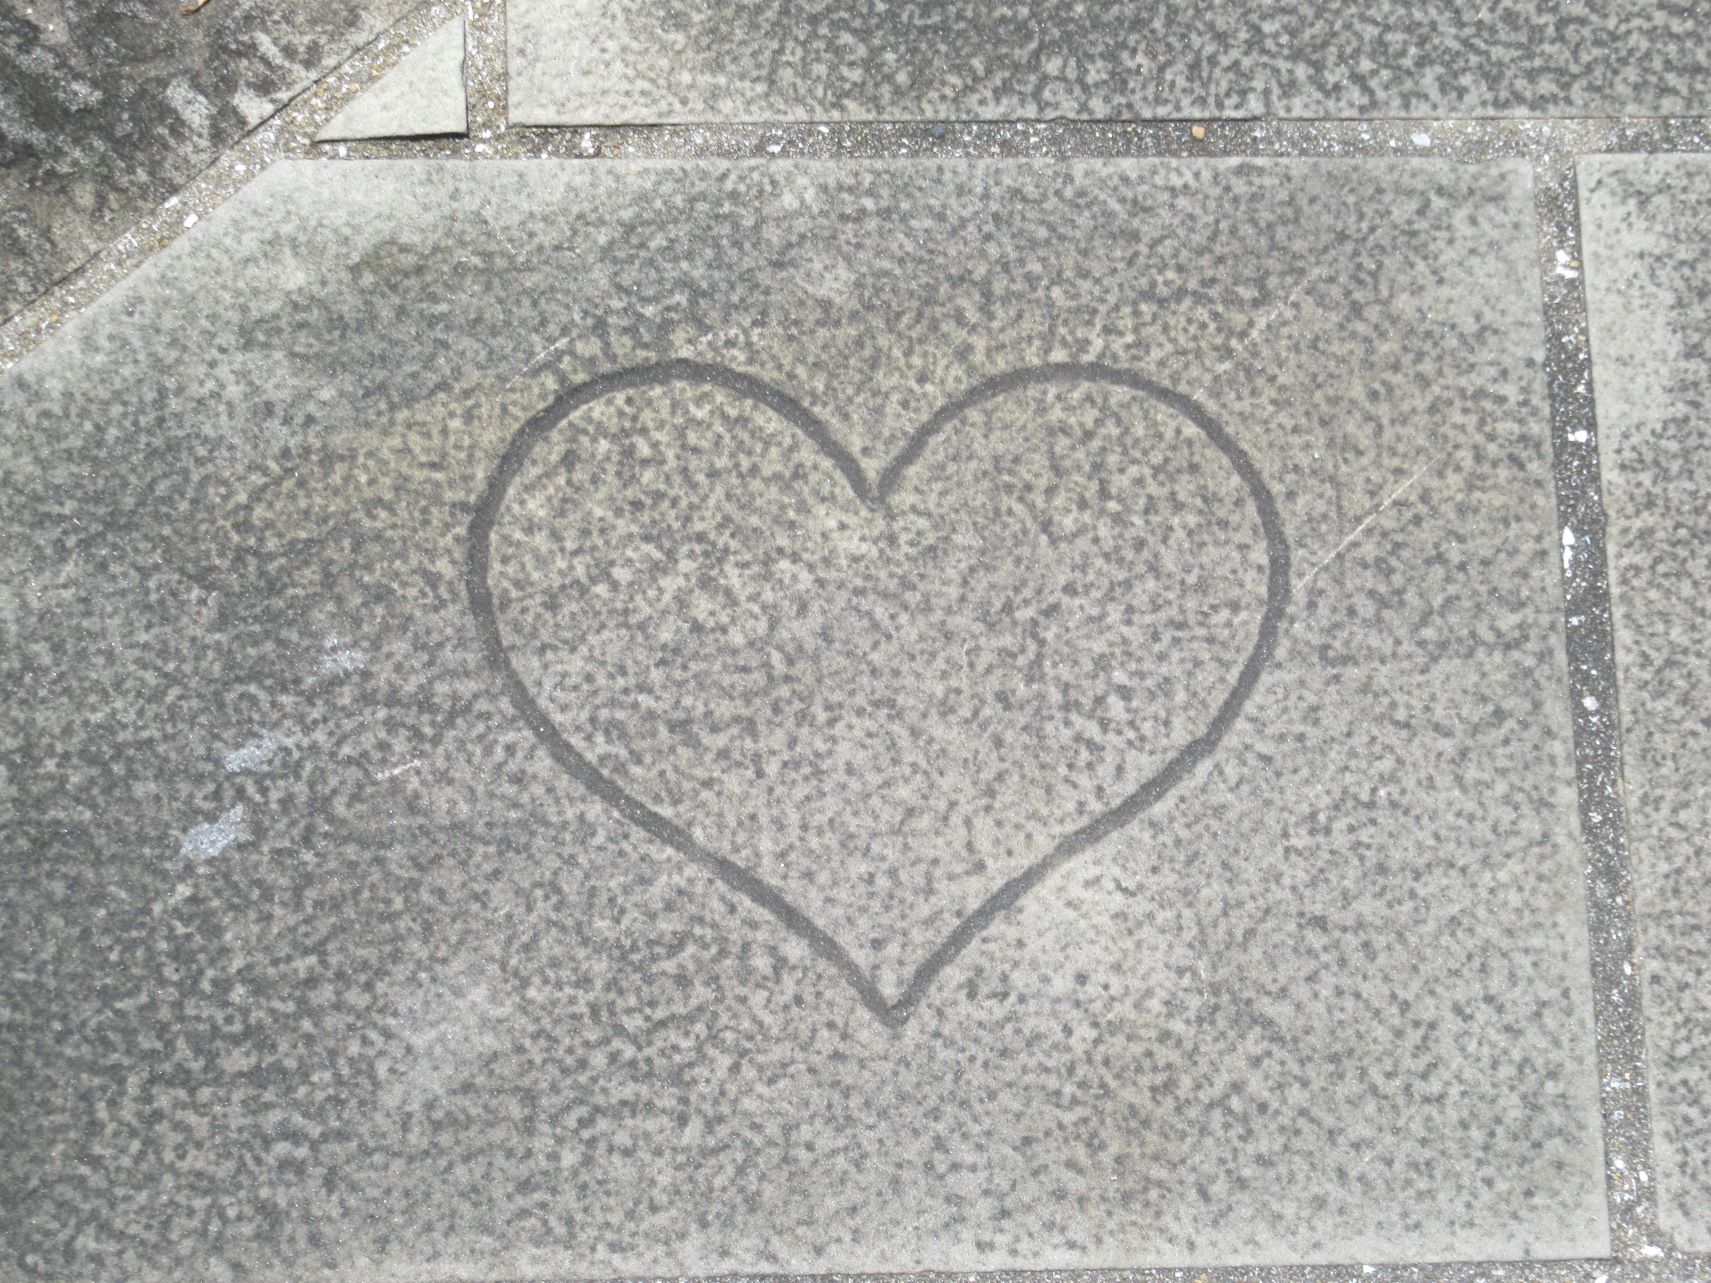 長崎市中島川沿いにある、石畳に描かれたハートマーク。